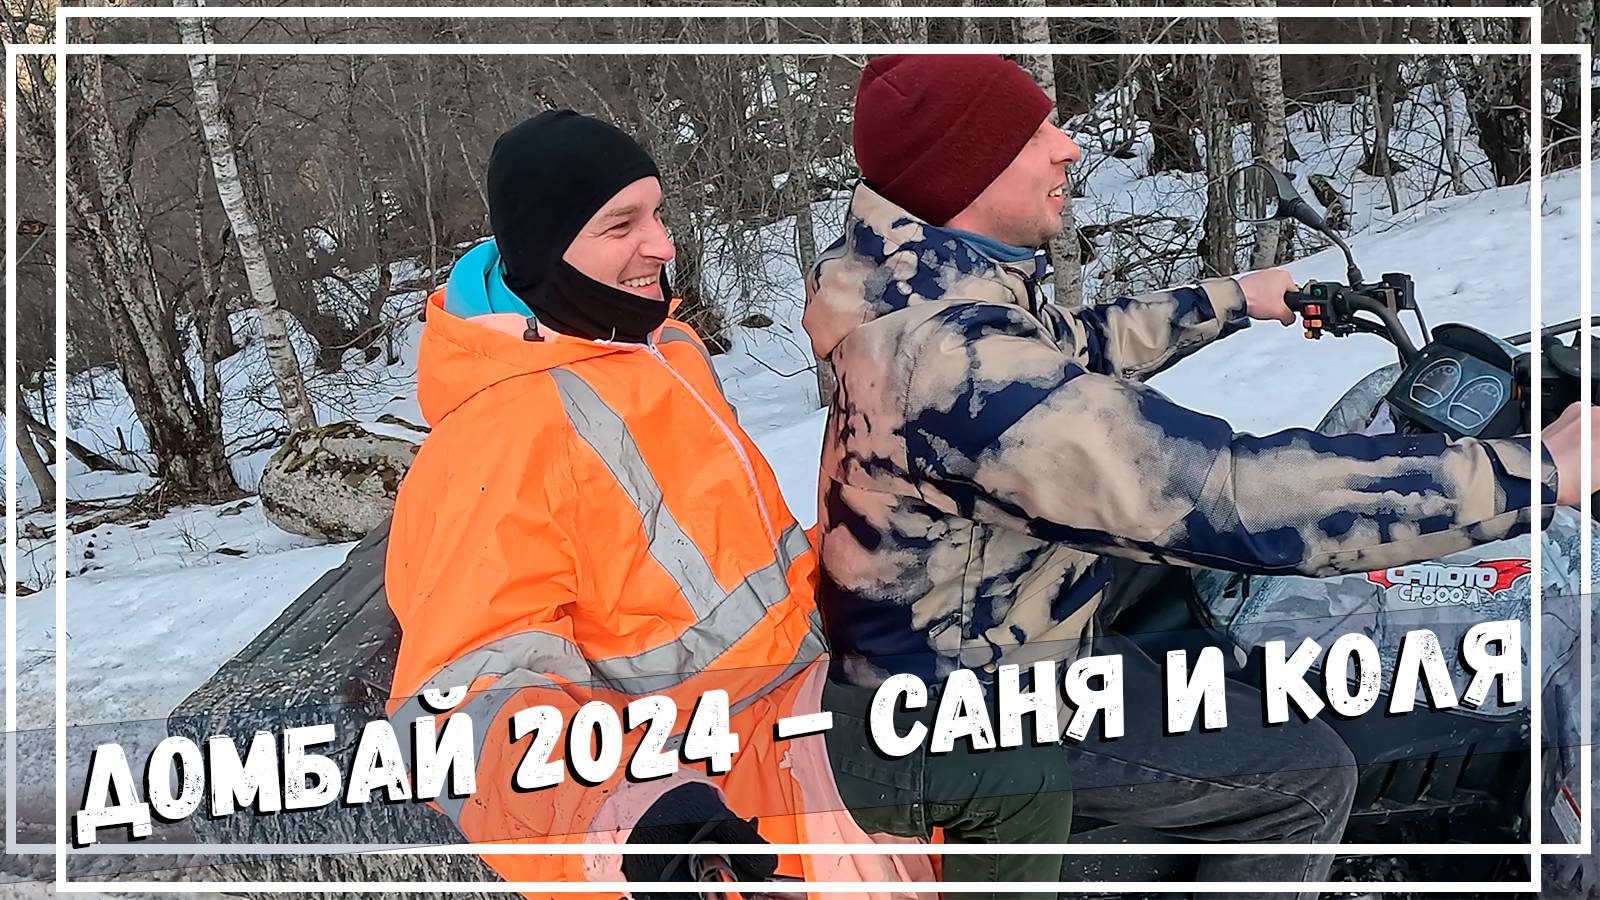 Домбай 2024 - Клуб 30+. Лучшее видео об отдыхе в горах Кавказа